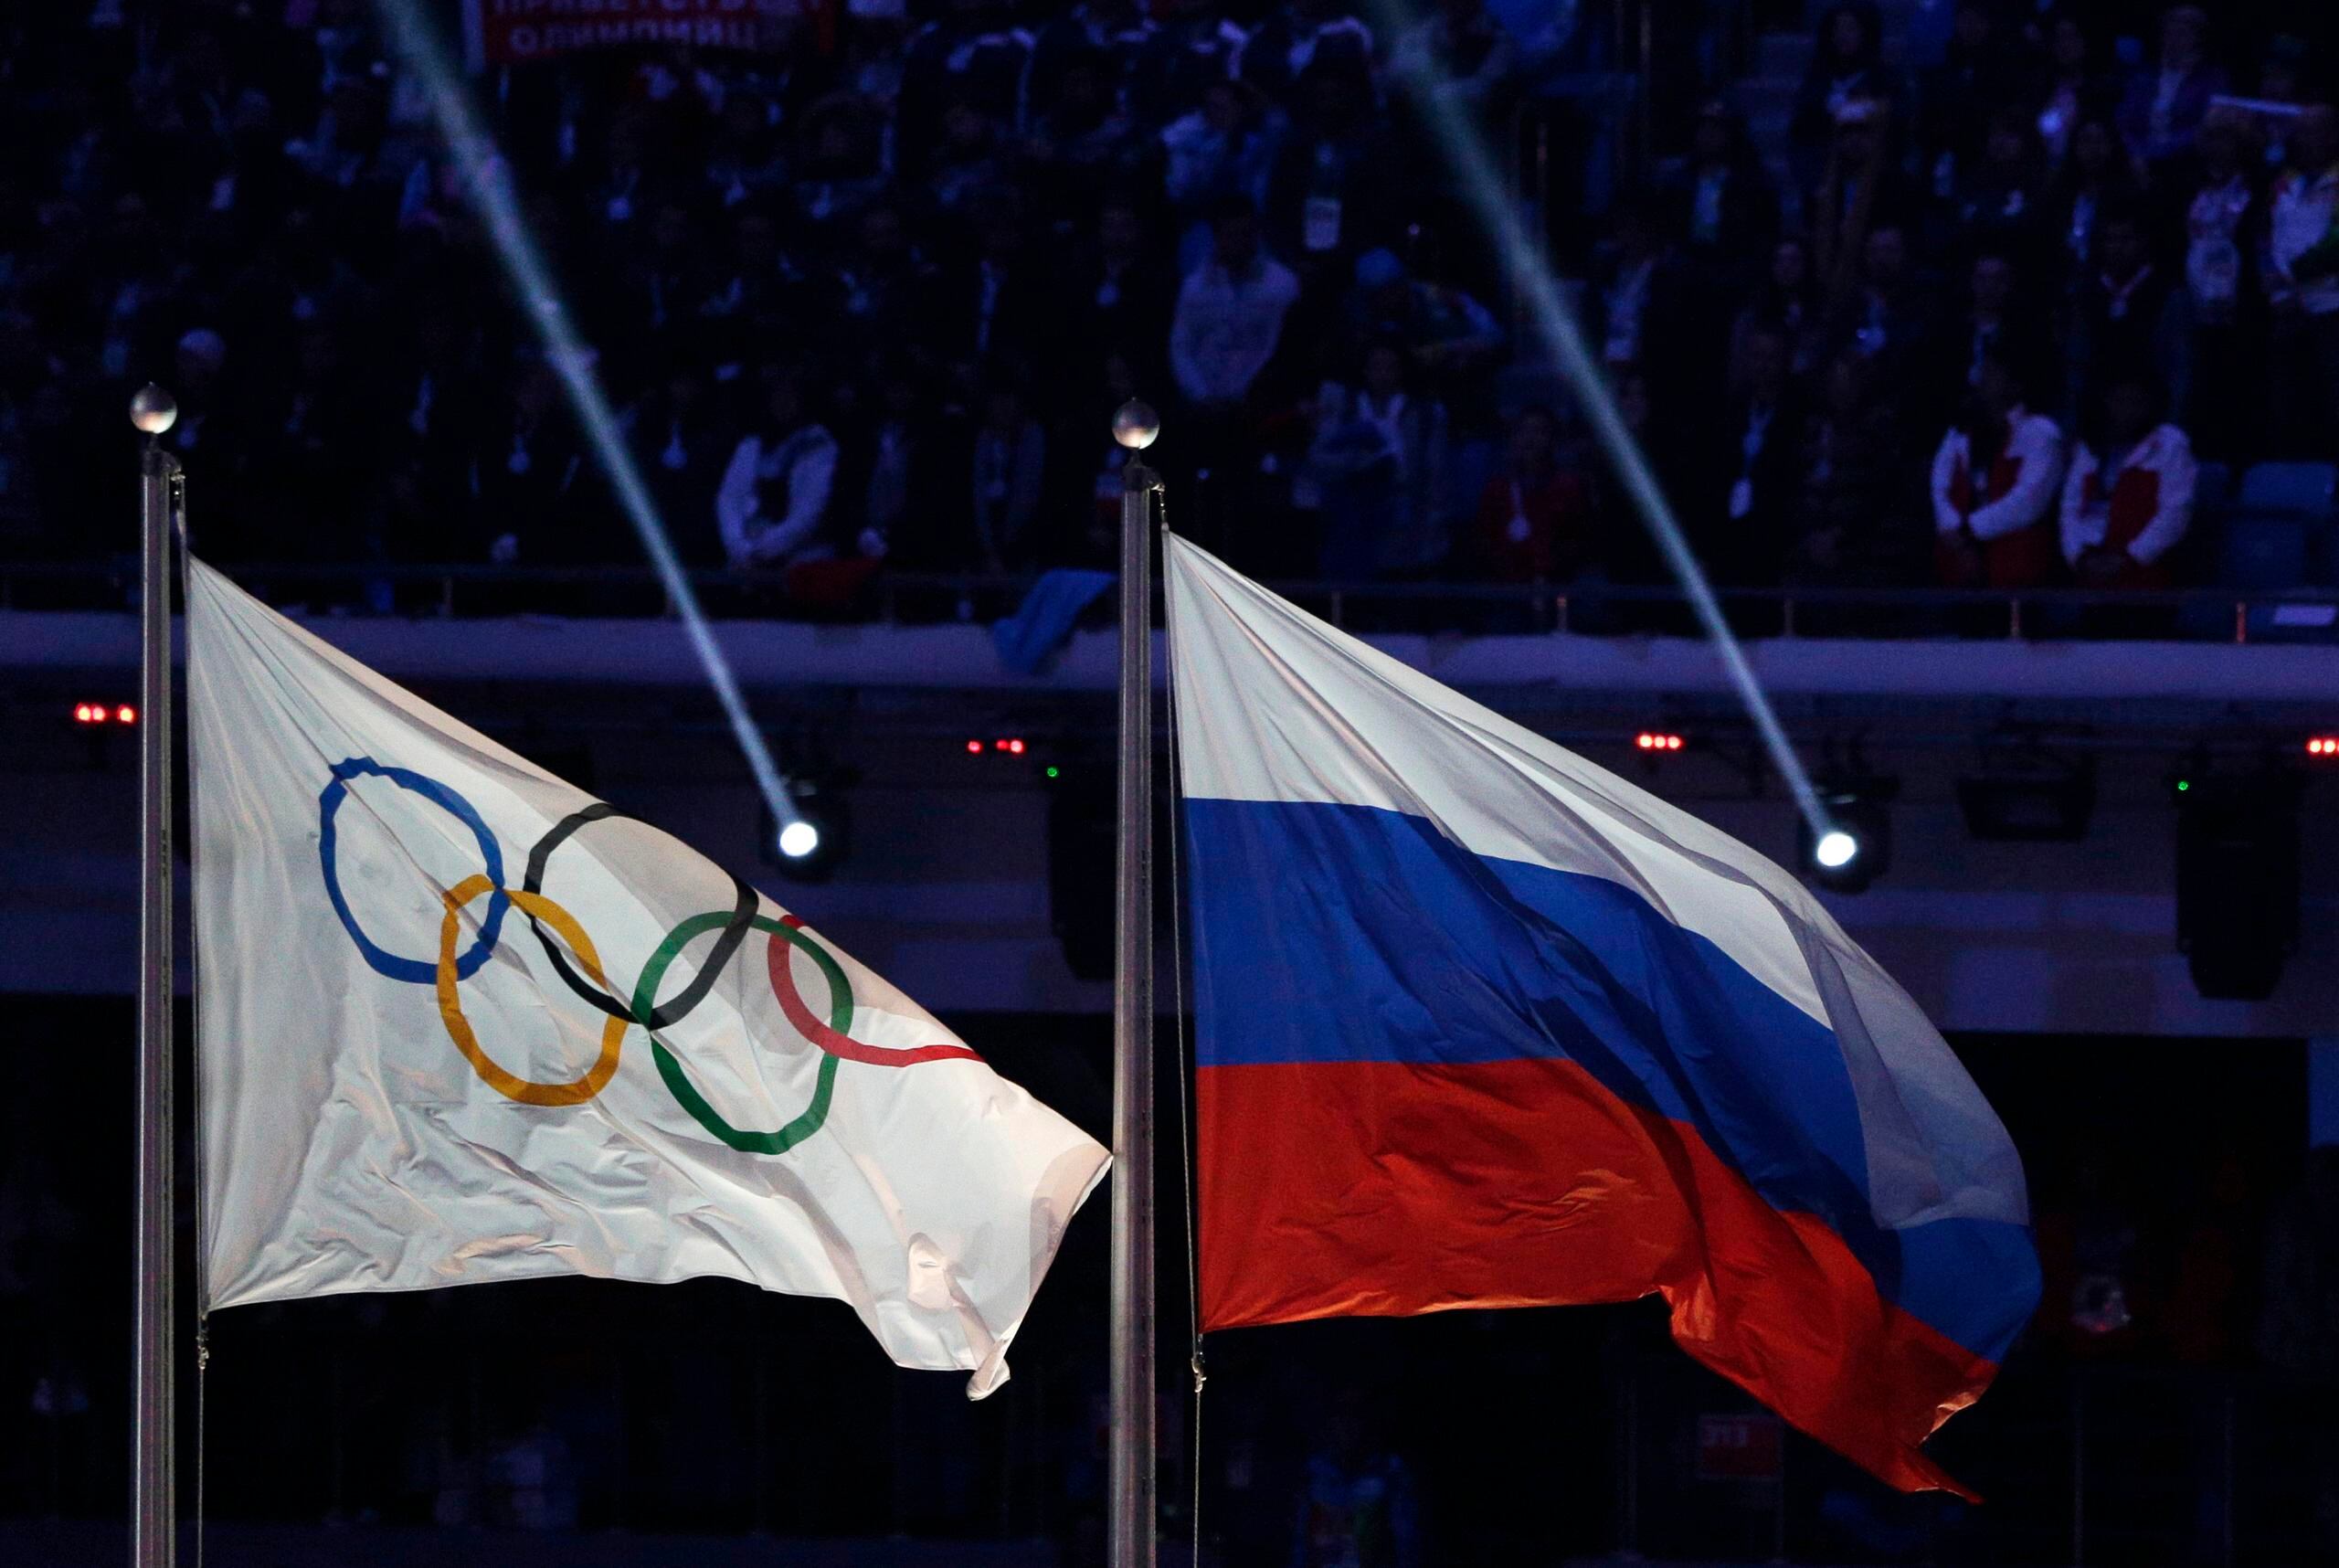 Debido a una sanción impuesta por el Comité Olímpico Internacional y la Agencia Mundial Antidopaje, los atletas rusos no pueden competir representando a su país ni utilizando su bandera.